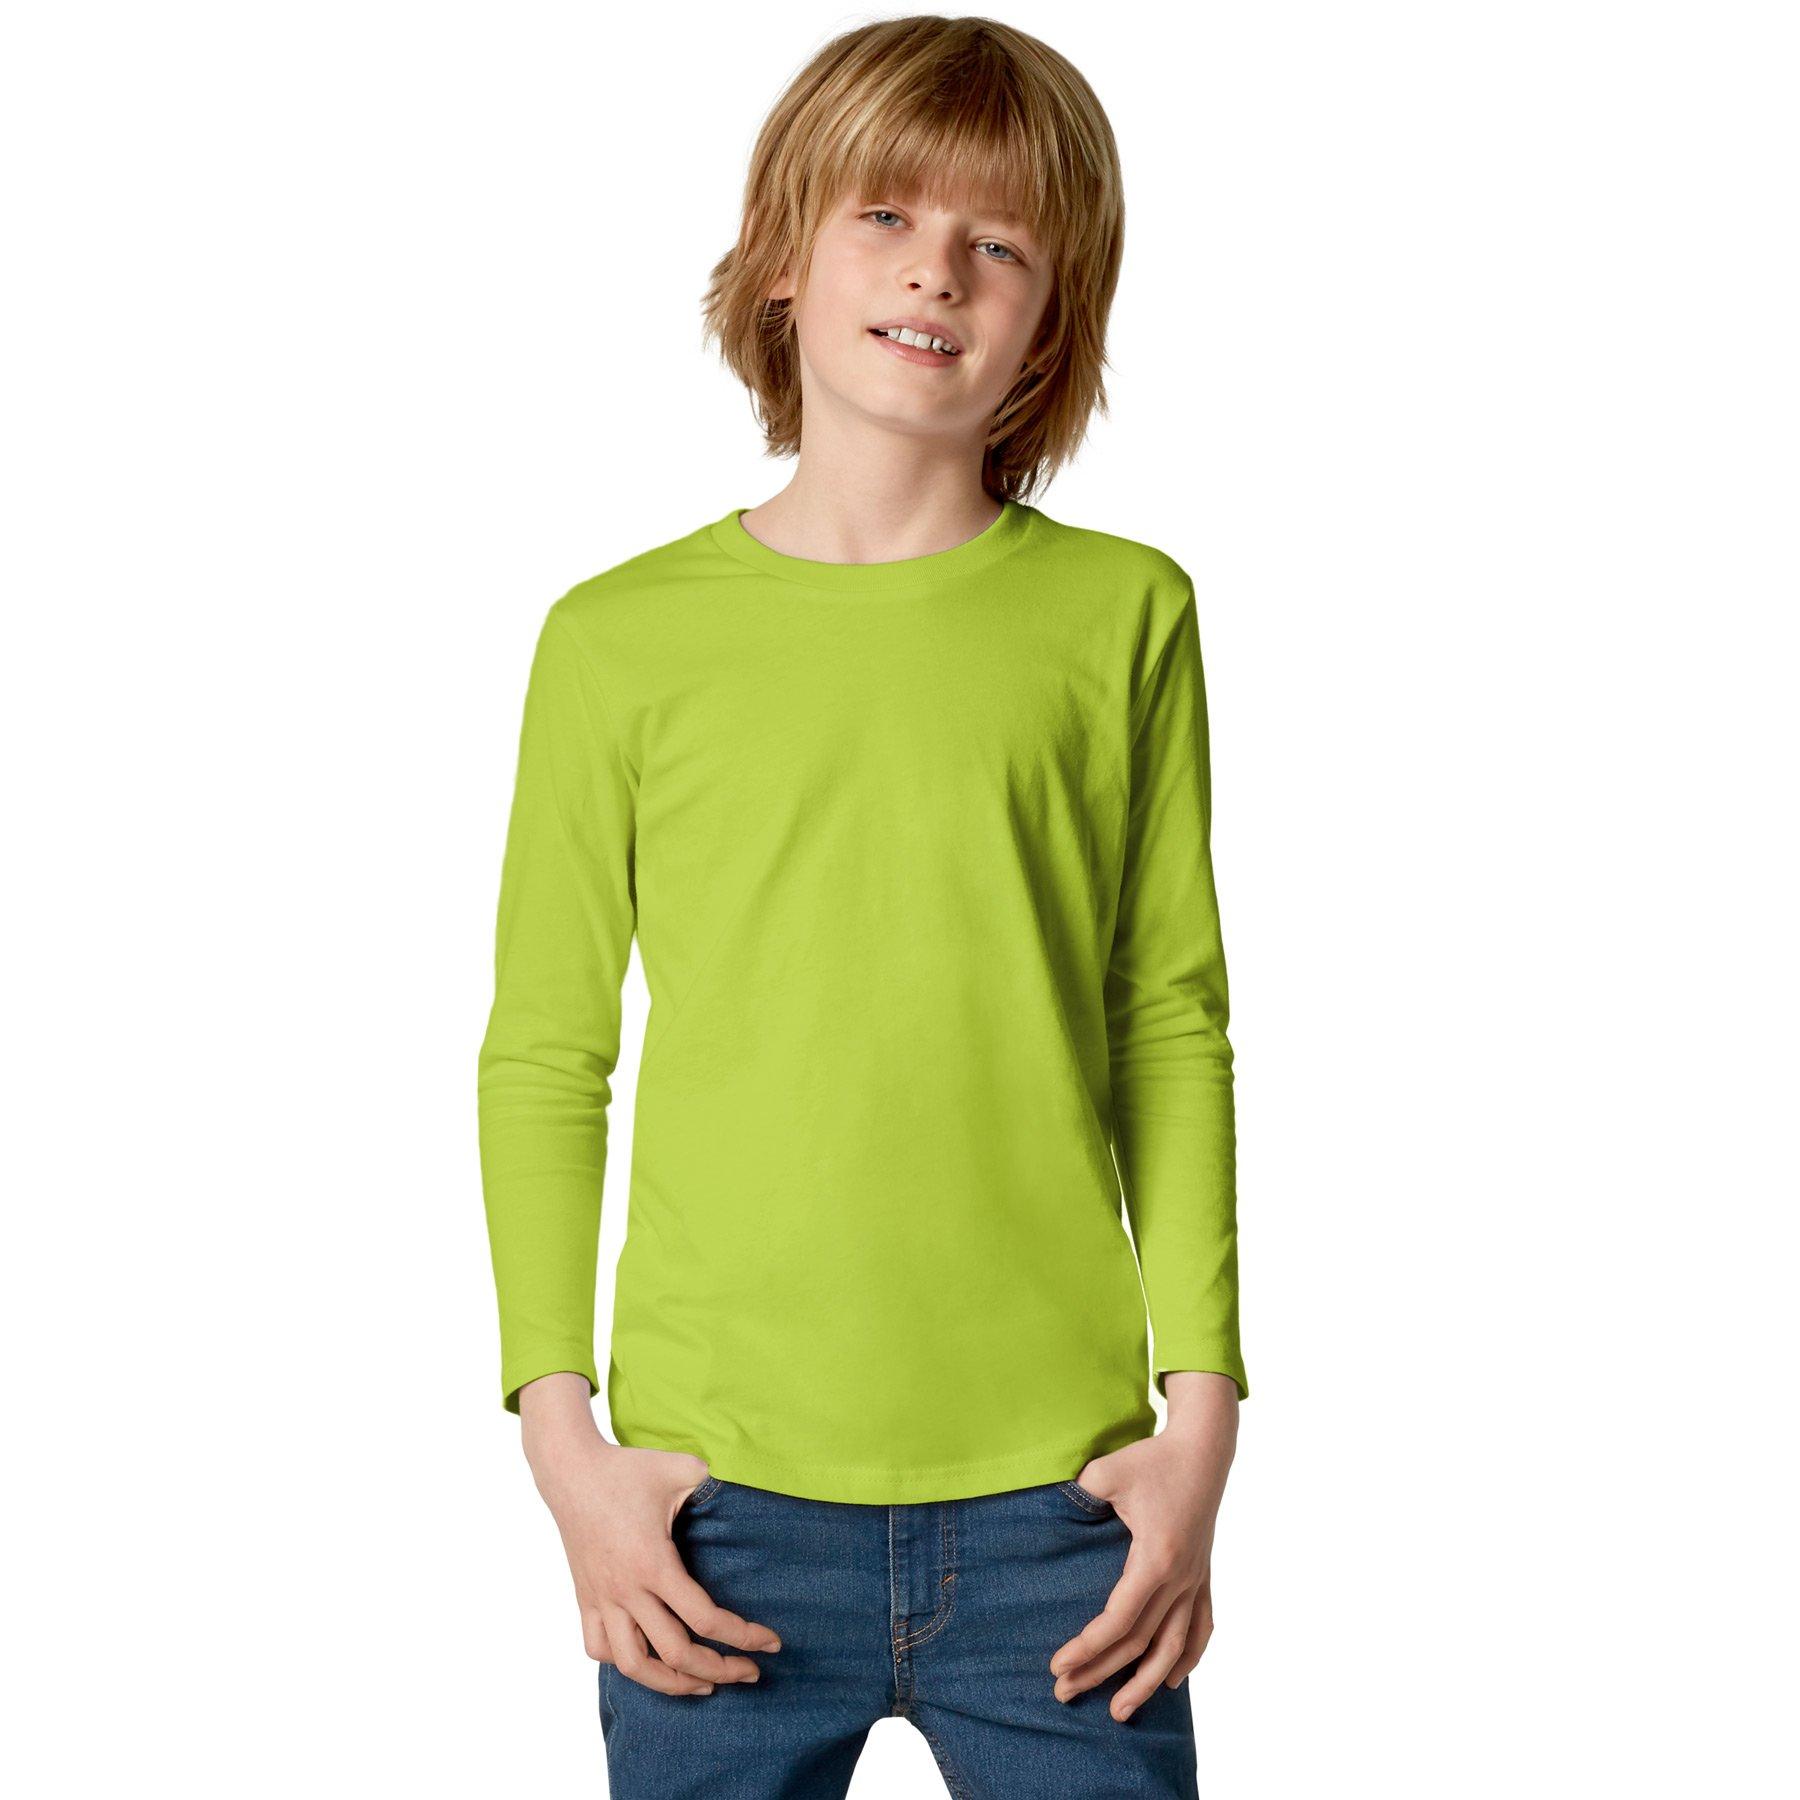 Langarm-shirt Kinder Jungen Hellgrün 140 von Tectake